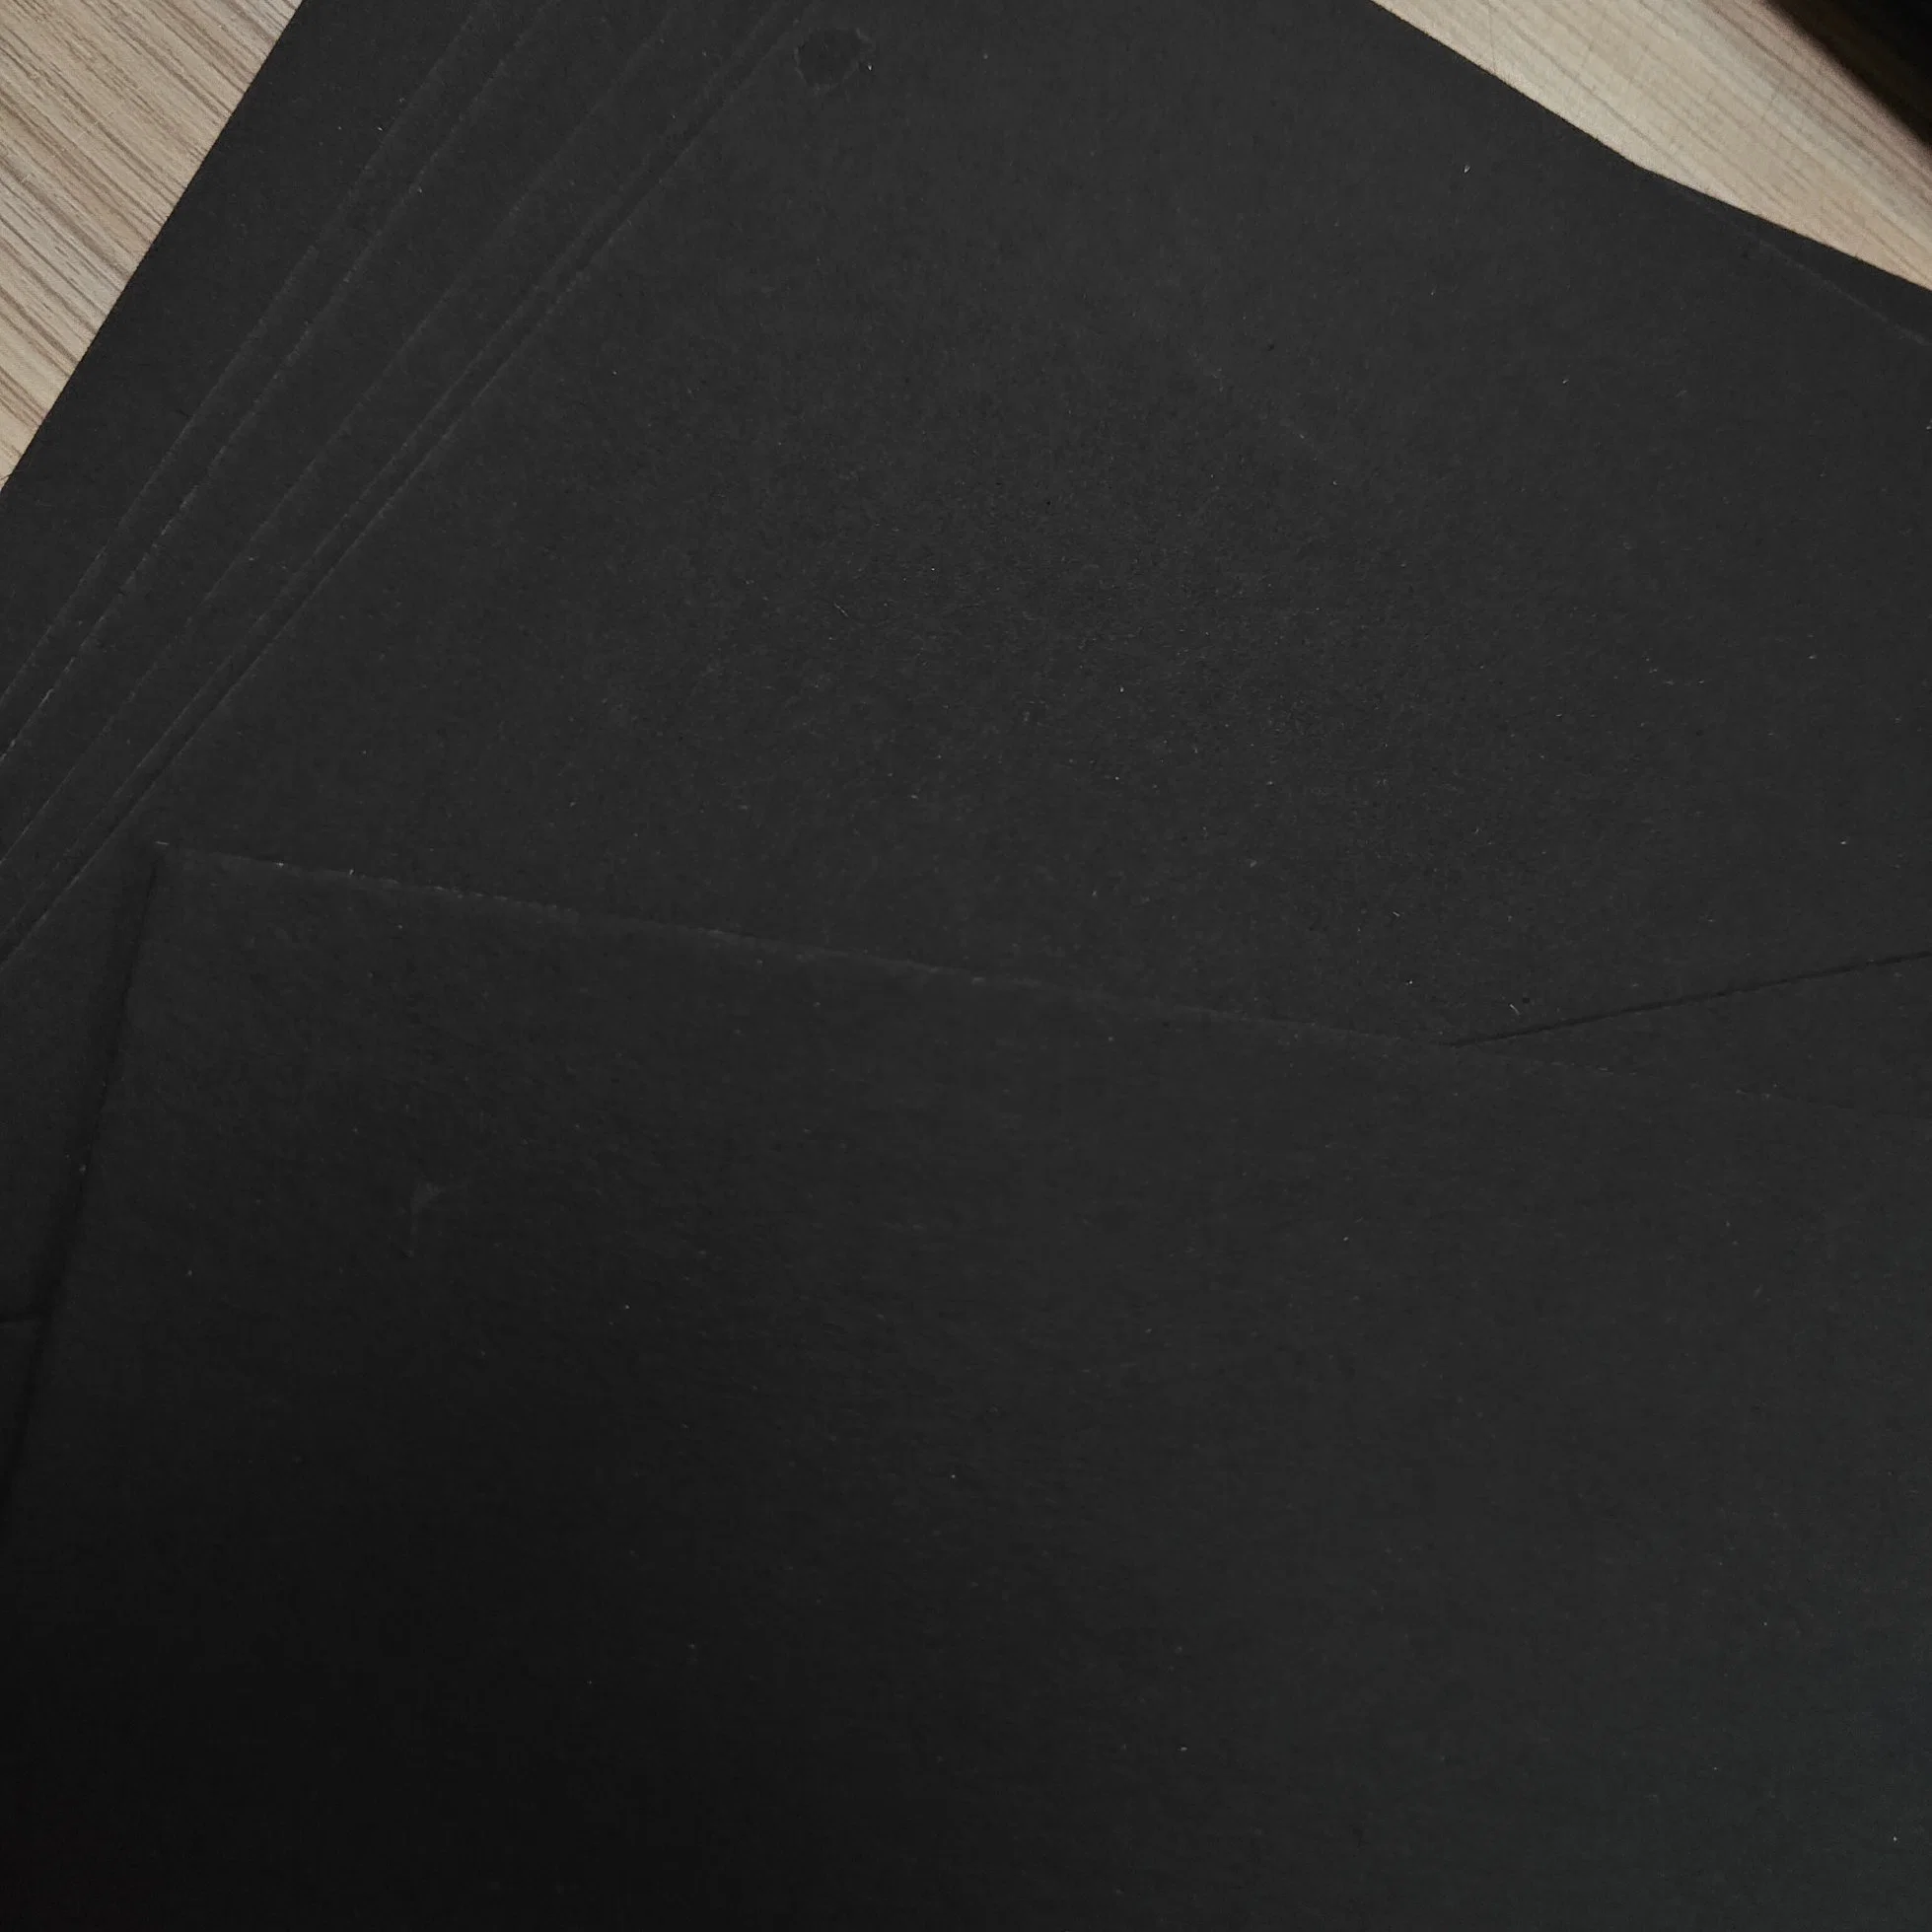 Offset 150GSM Uncoated C2s Black Paper 250GSM Stationary Black Cardboard